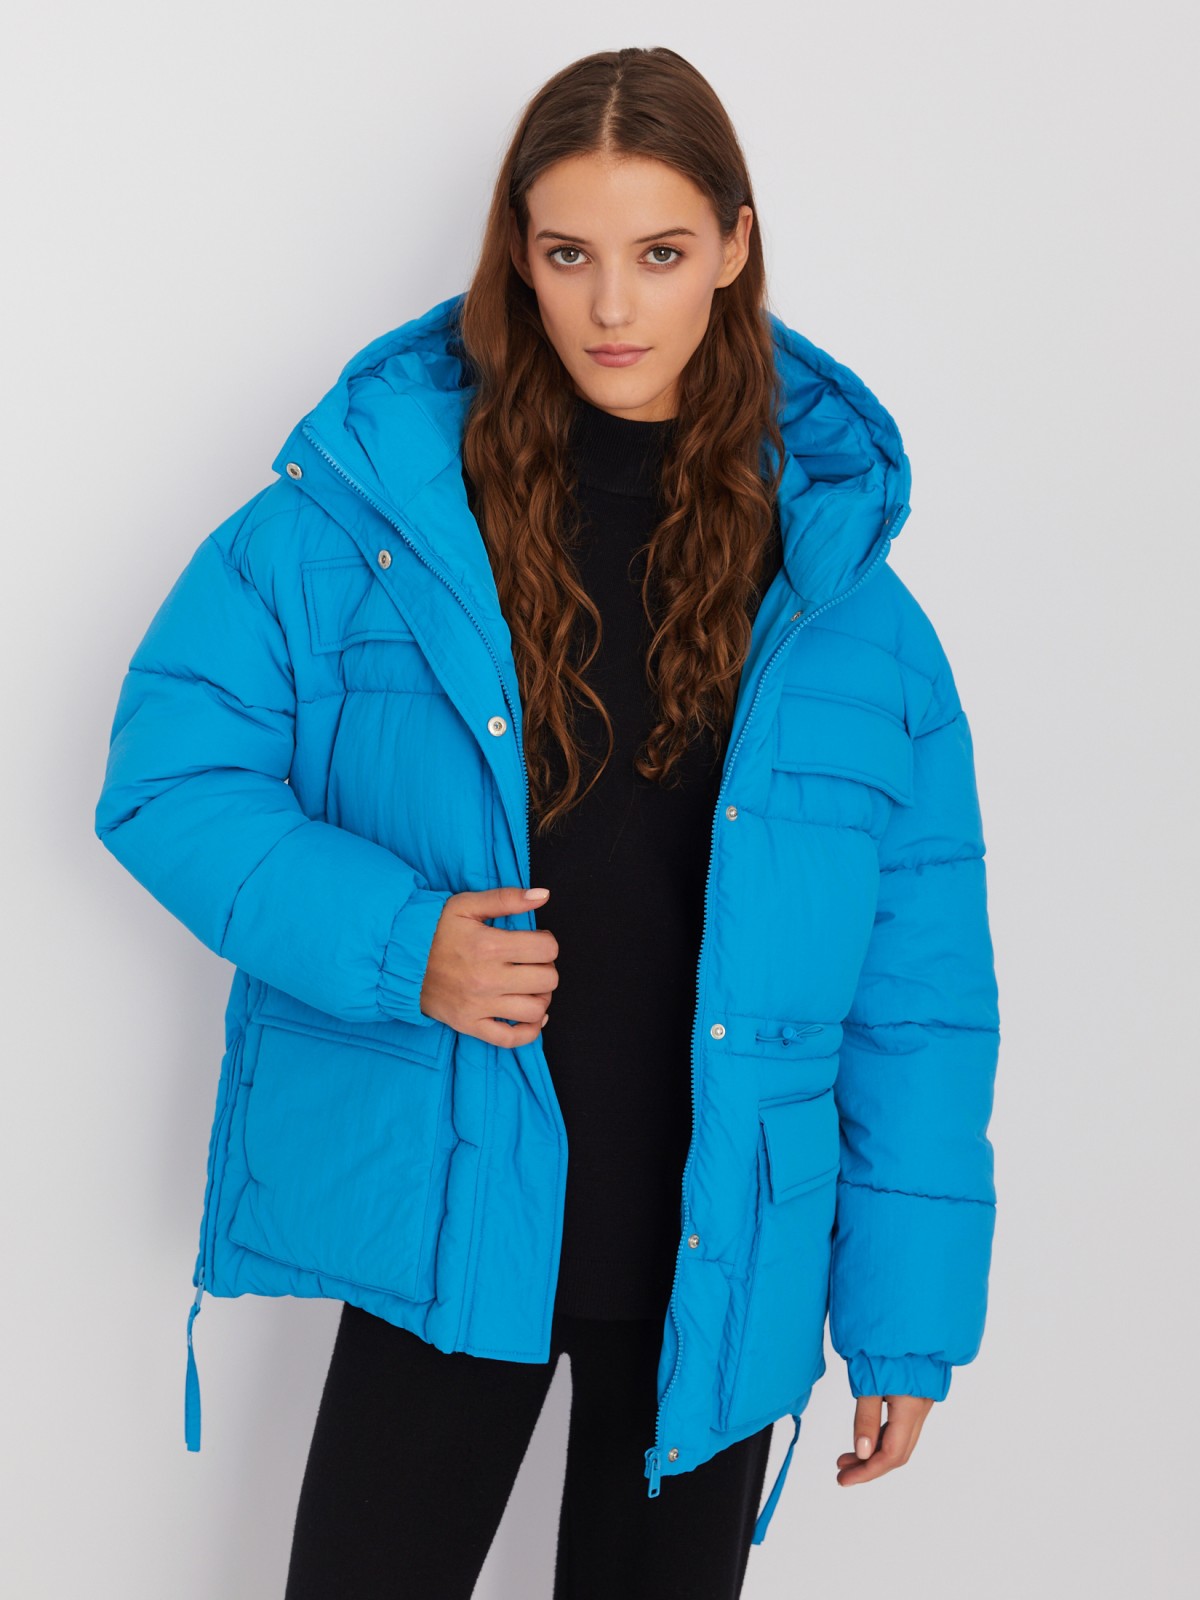 Тёплая куртка с капюшоном и регулируемой внутренней талией zolla 023425102014, цвет голубой, размер XS